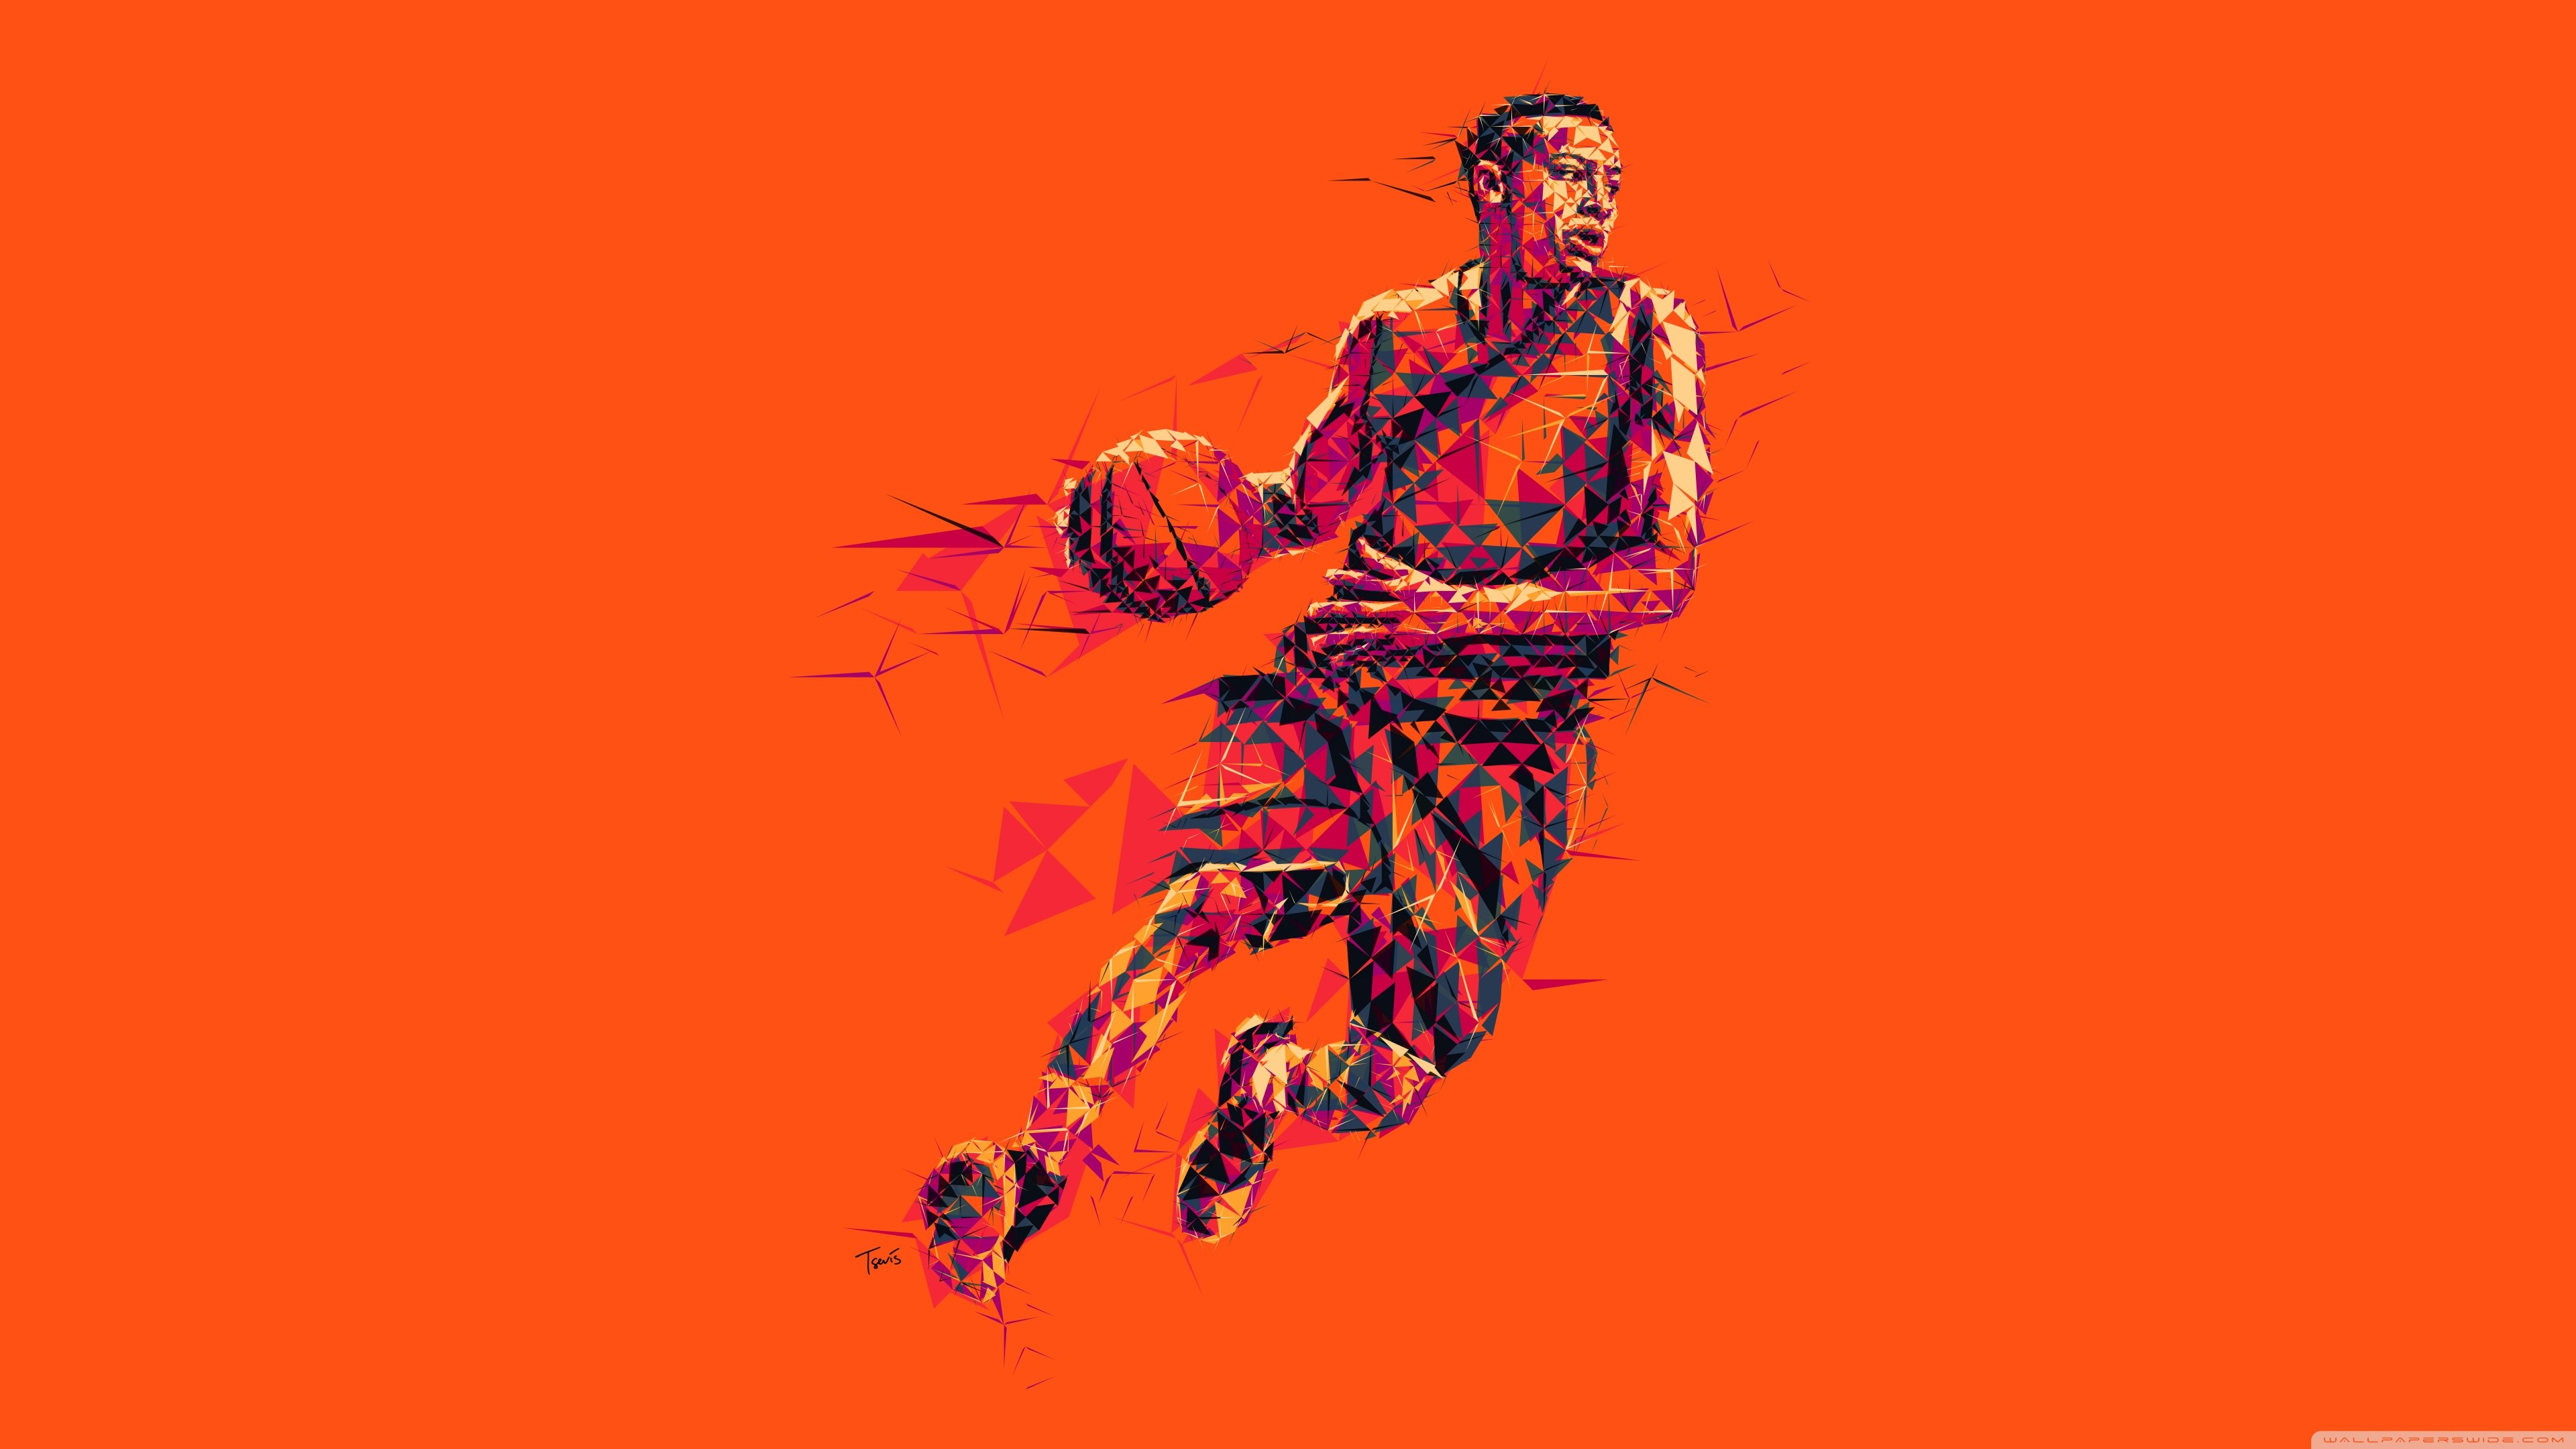 3840x2160 Best 25 Basketball wallpaper hd ideas on Pinterest | Basketball .